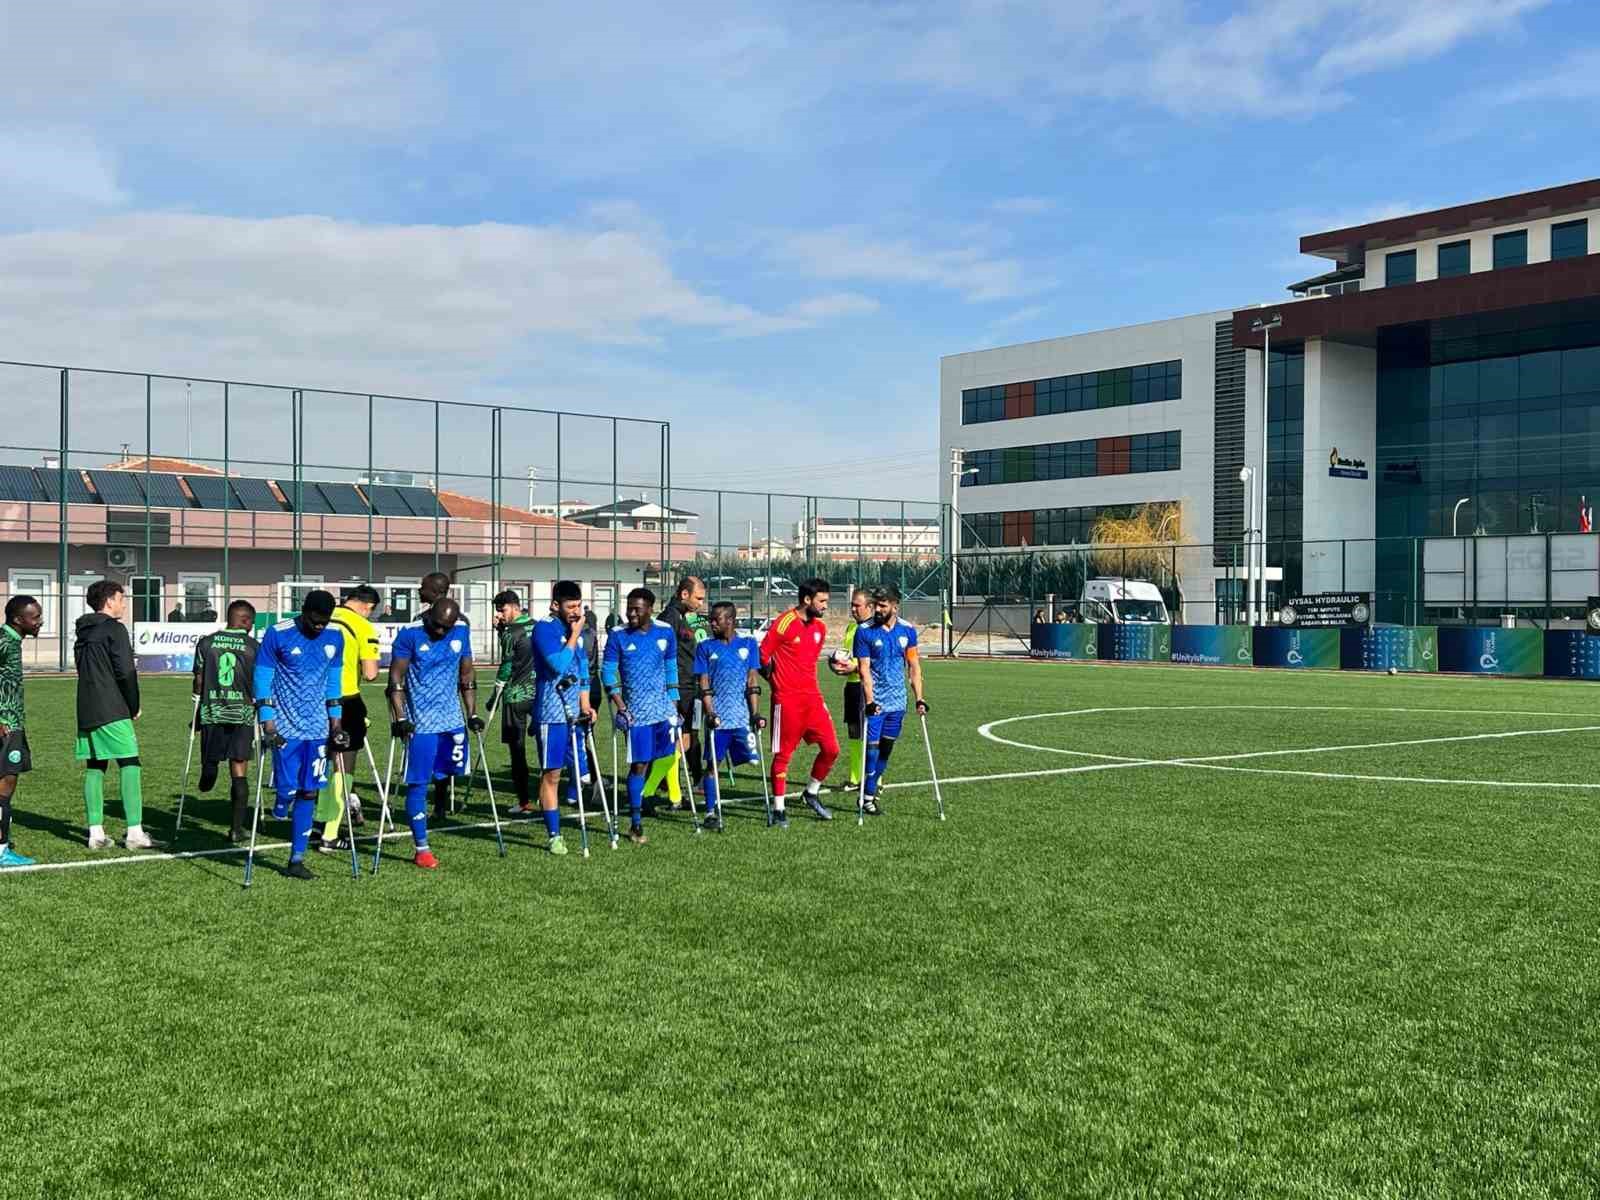 Şahinbey Ampute Futbol Takımı Konya deplasmanından galibiyetle döndü 4-0
